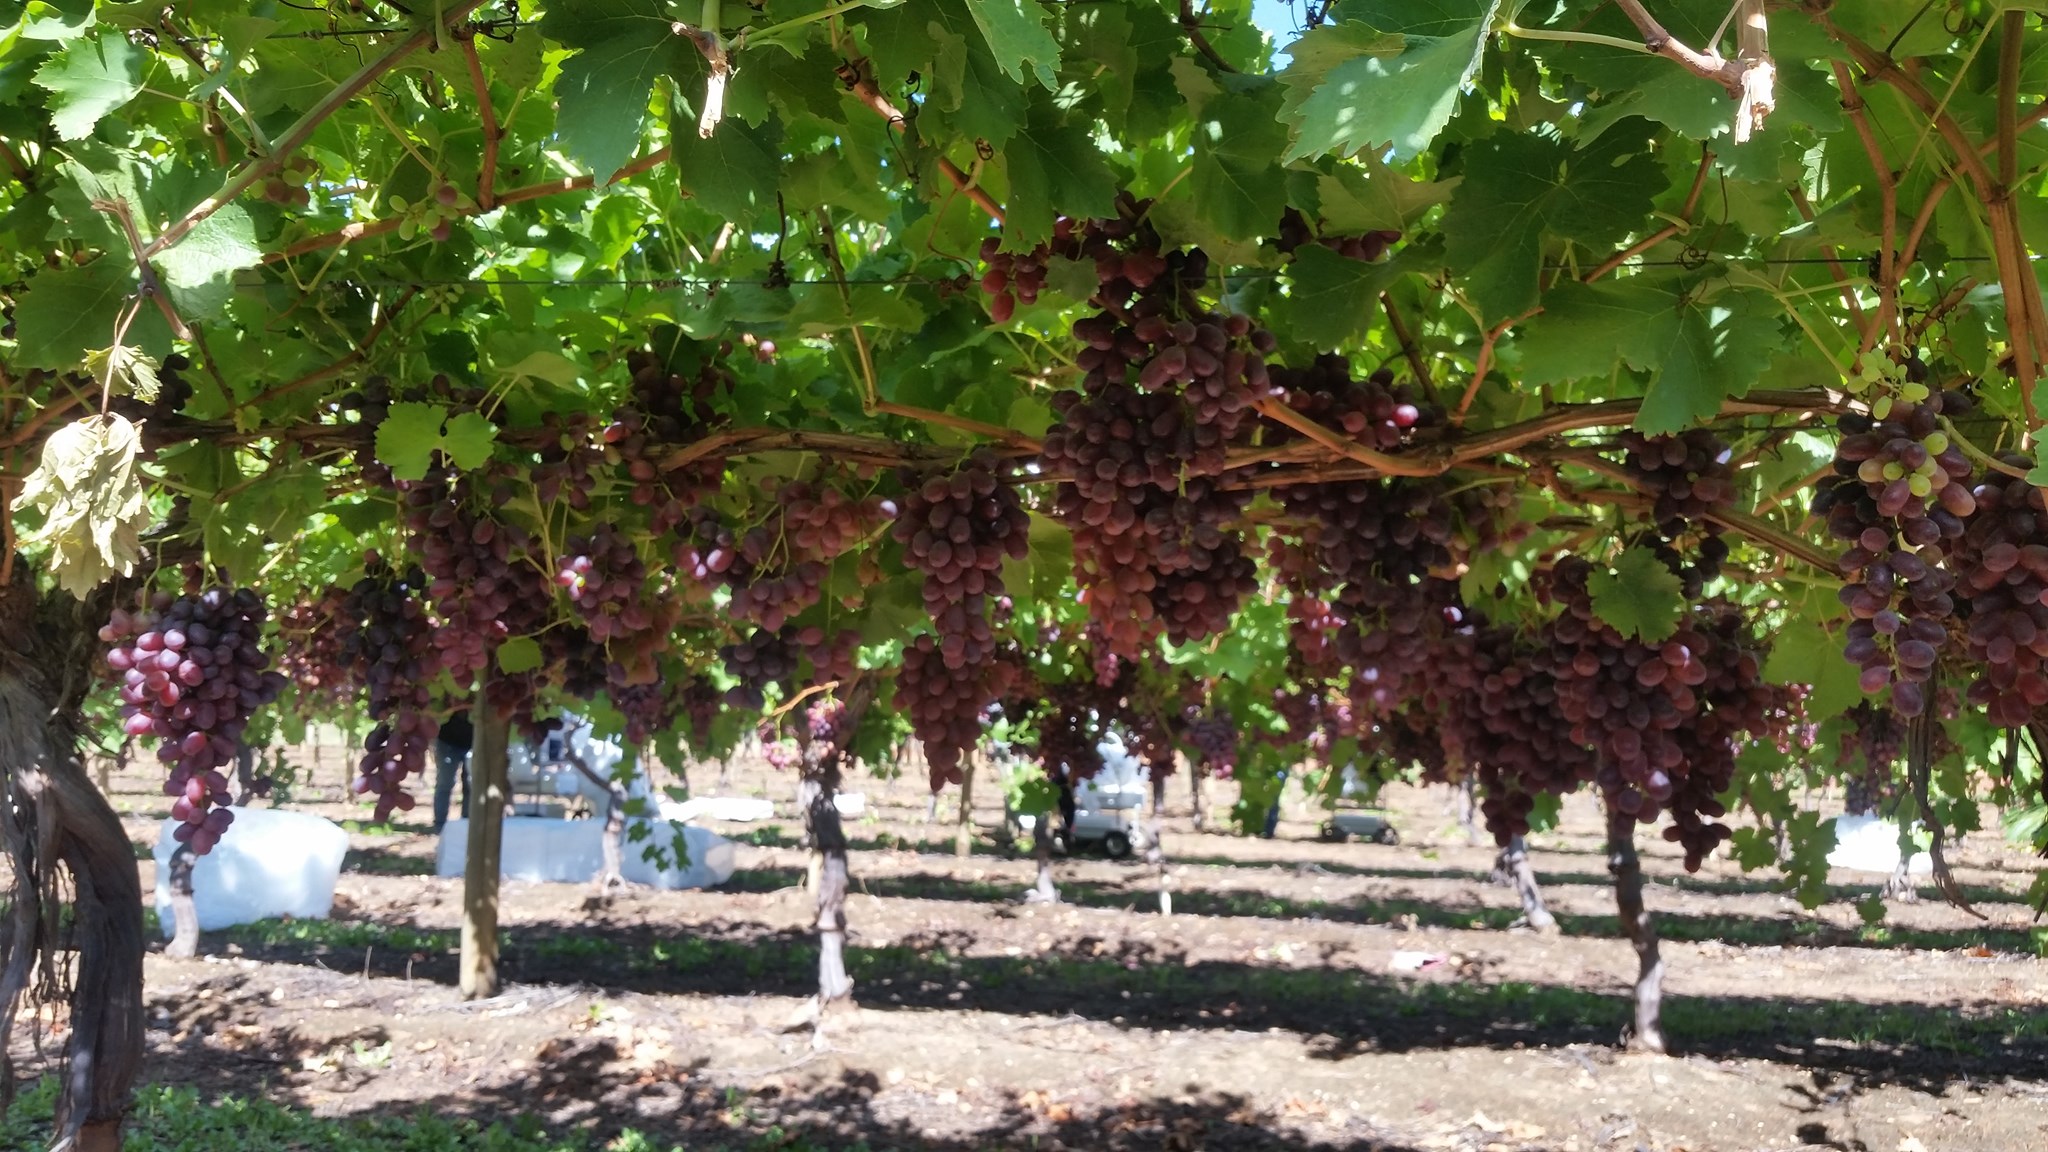 Budou Farms Australian grapes to Japan